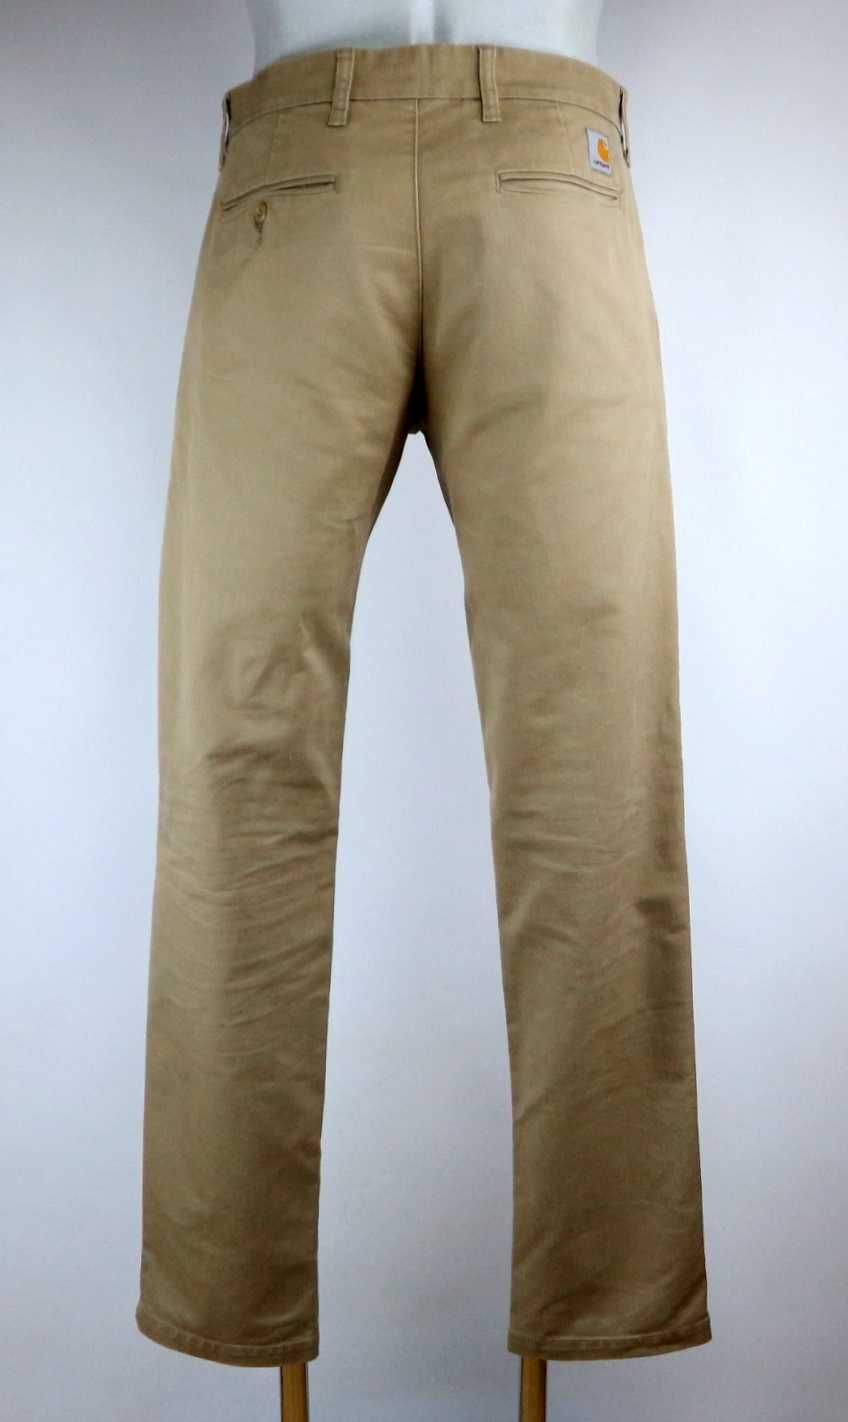 Carhartt Sid Pant spodnie materiałowe chino W34 L32 pas 2 x 45cm